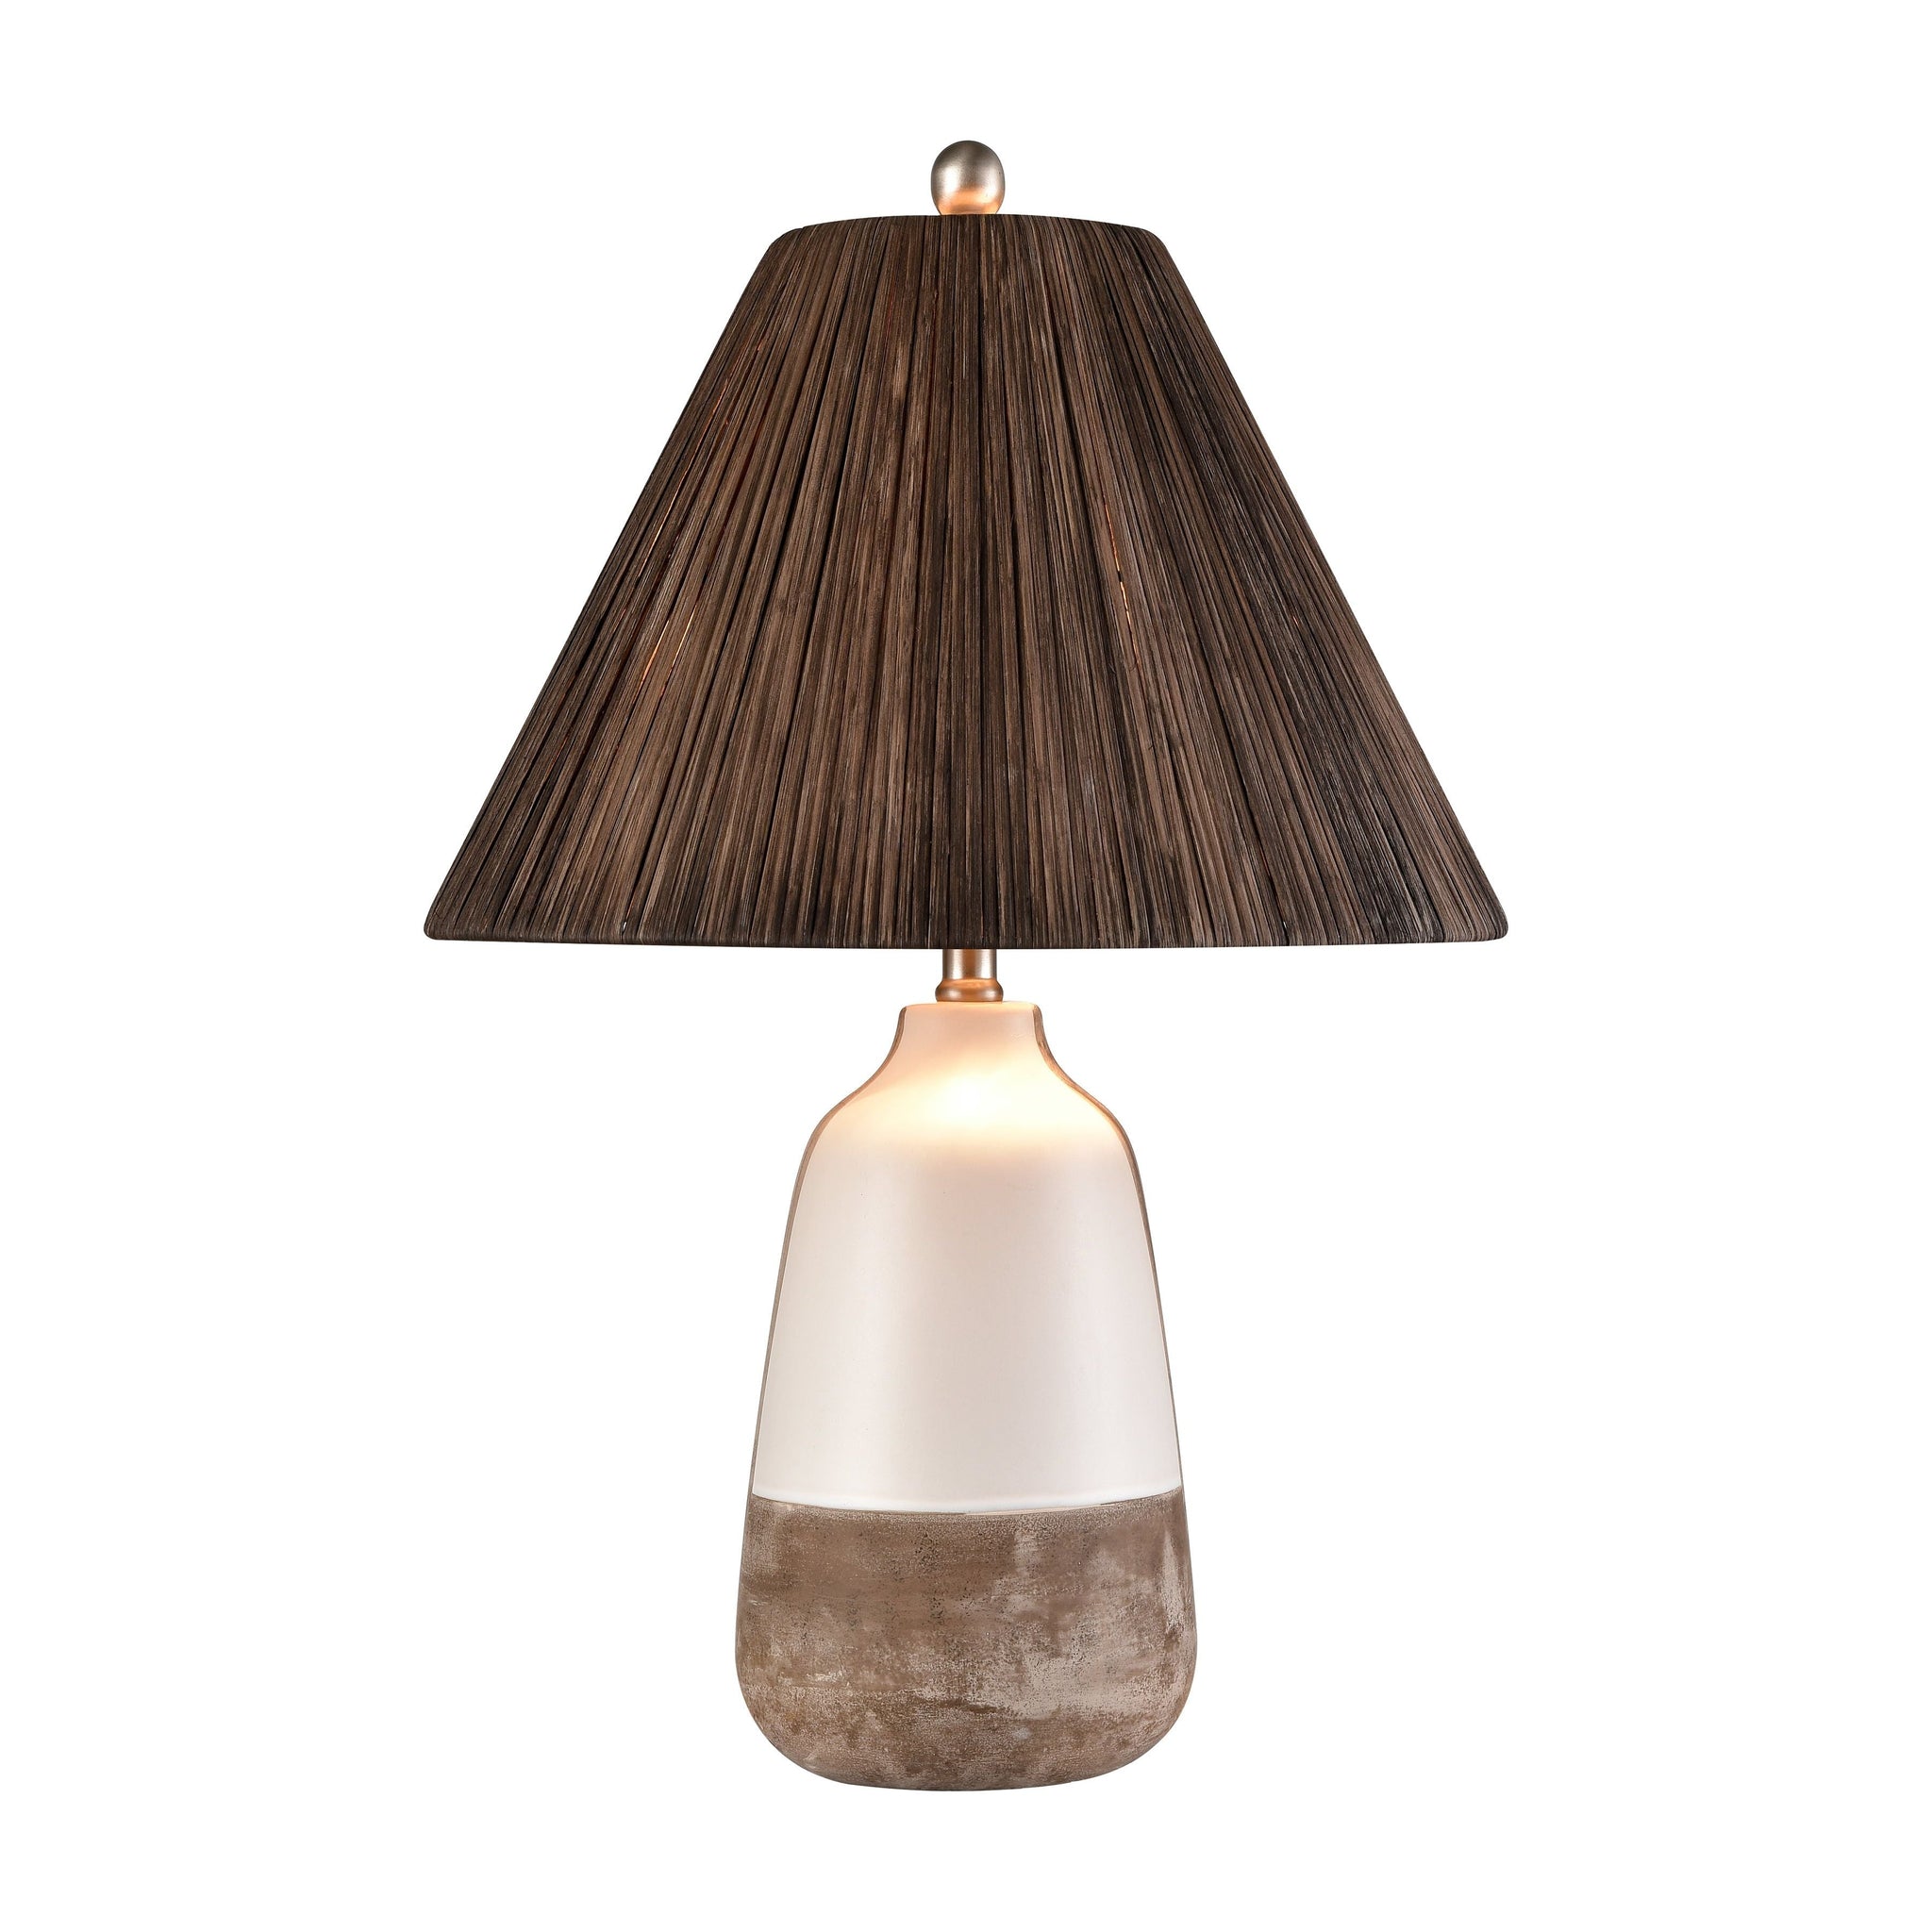 Kirkover 26" High 1-Light Table Lamp